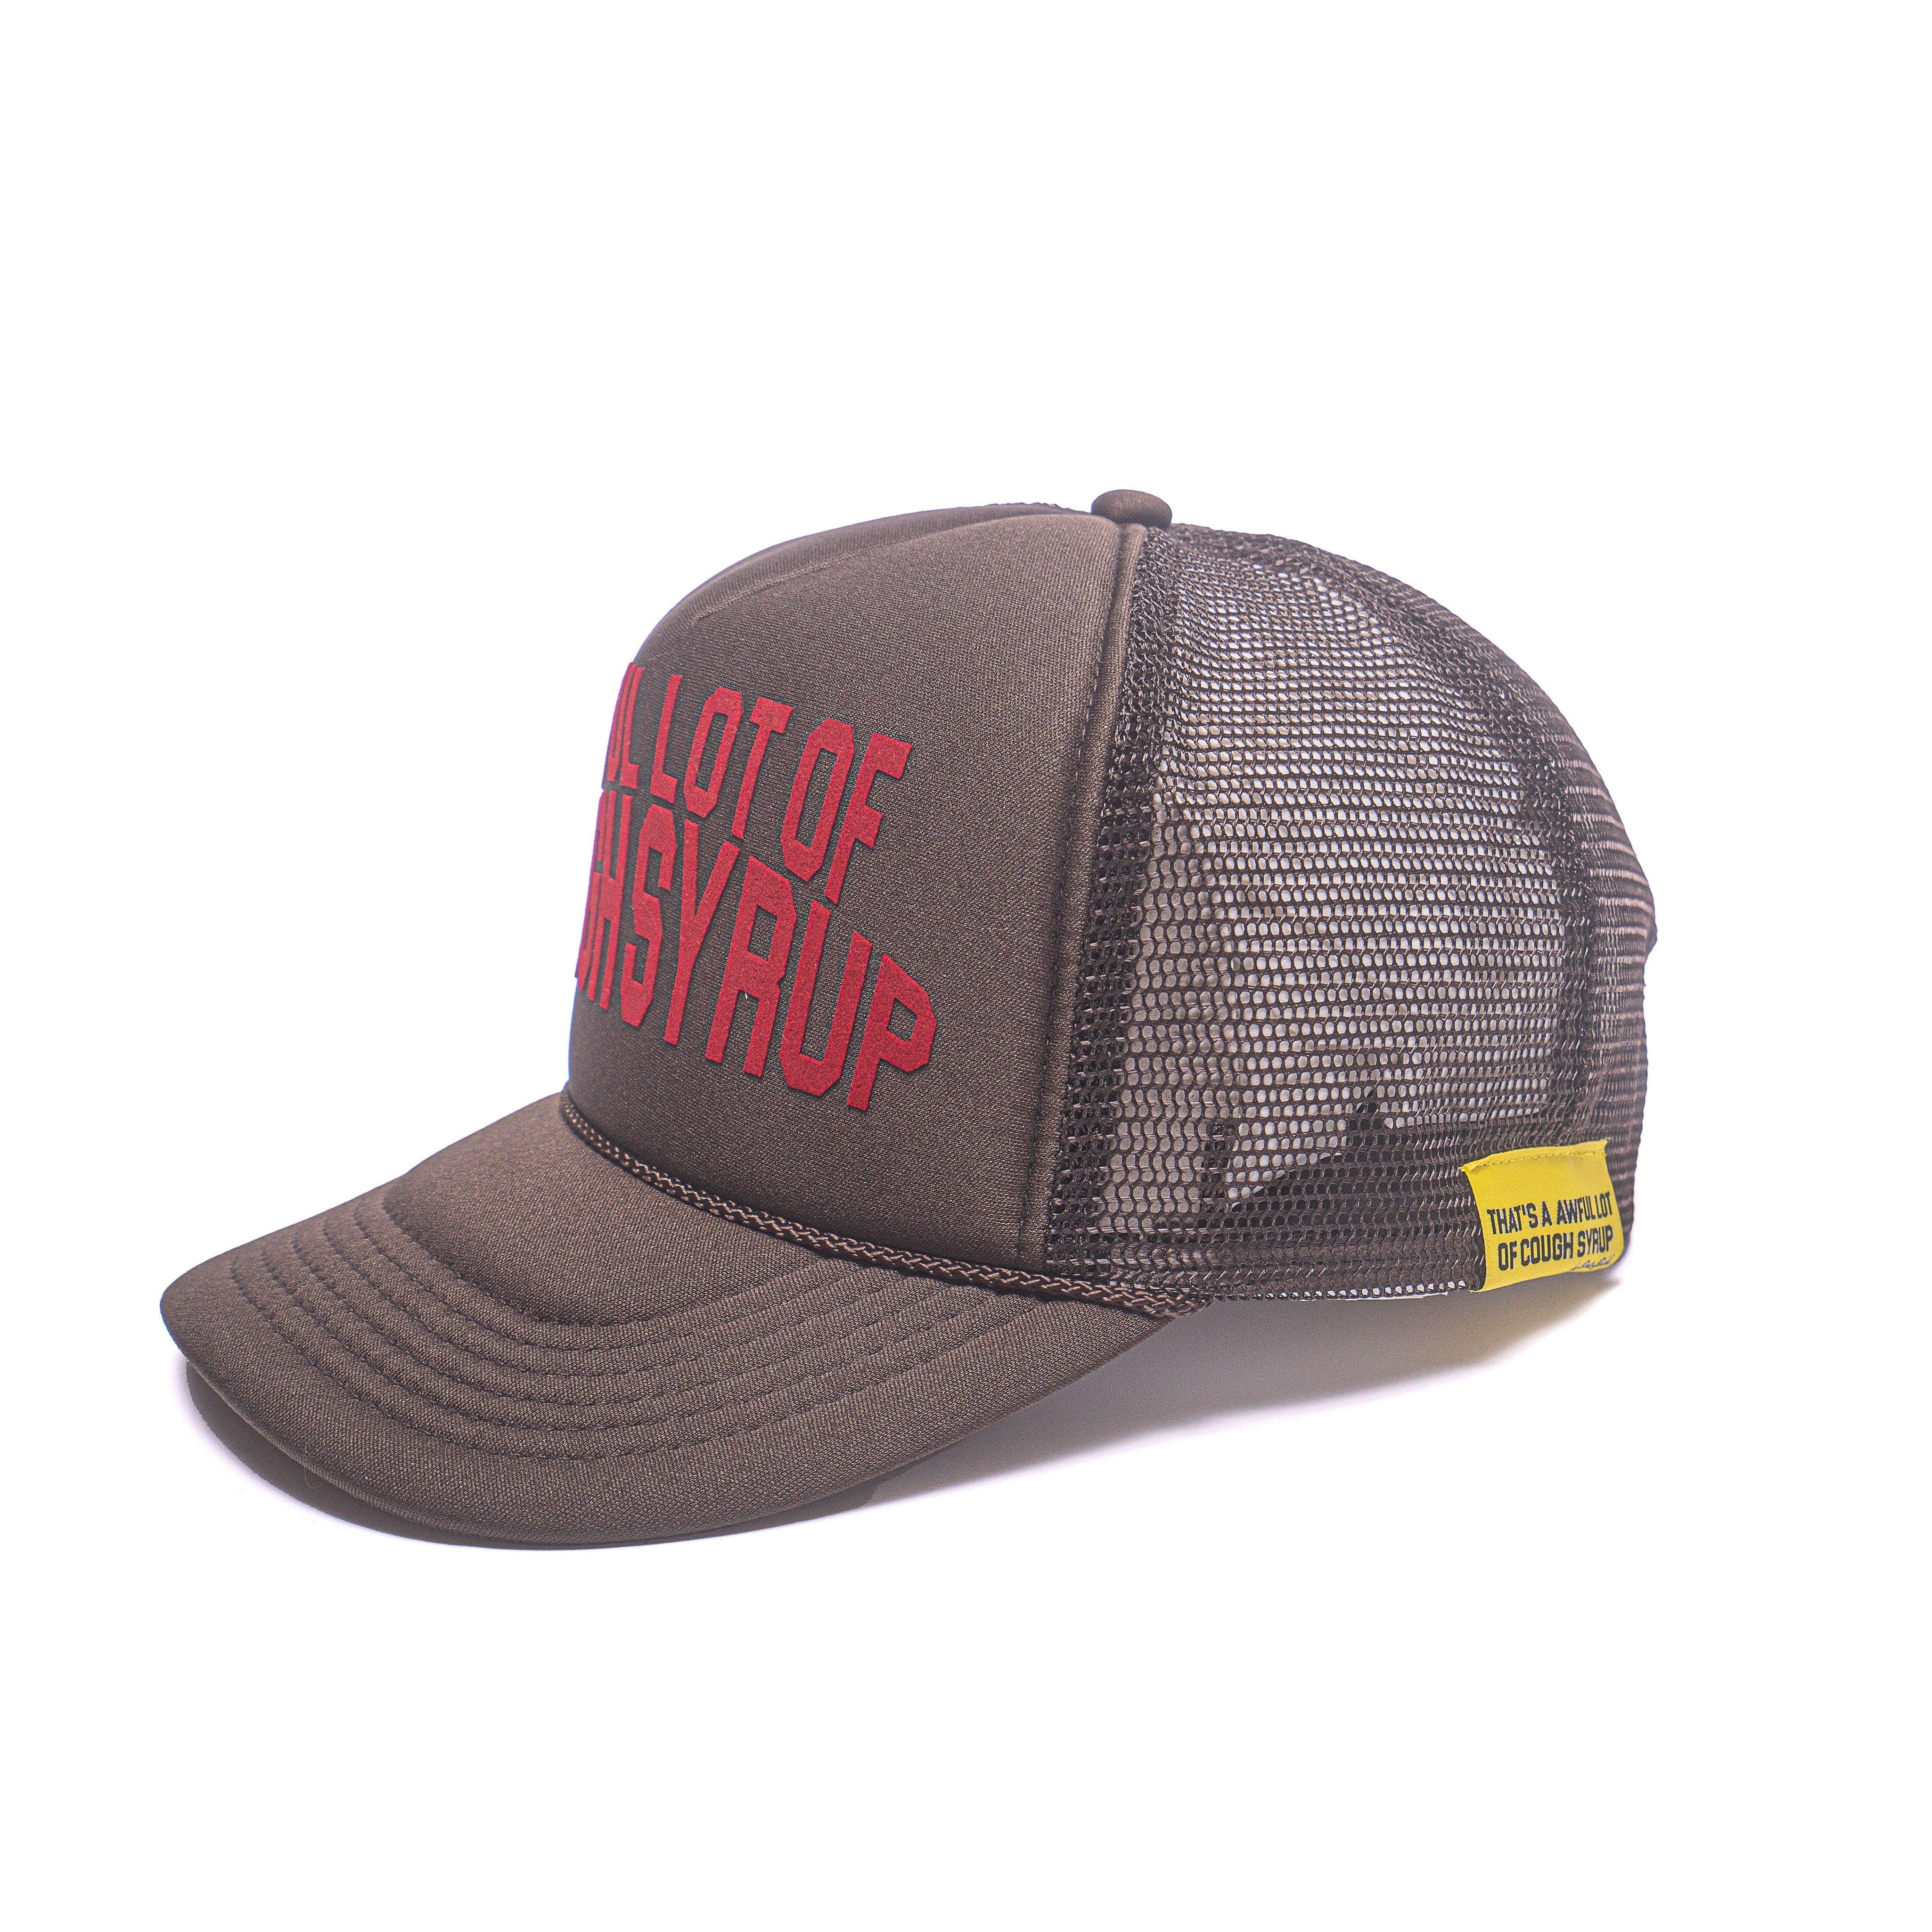 Cough Syrup Trucker Hat By Desto Dubb